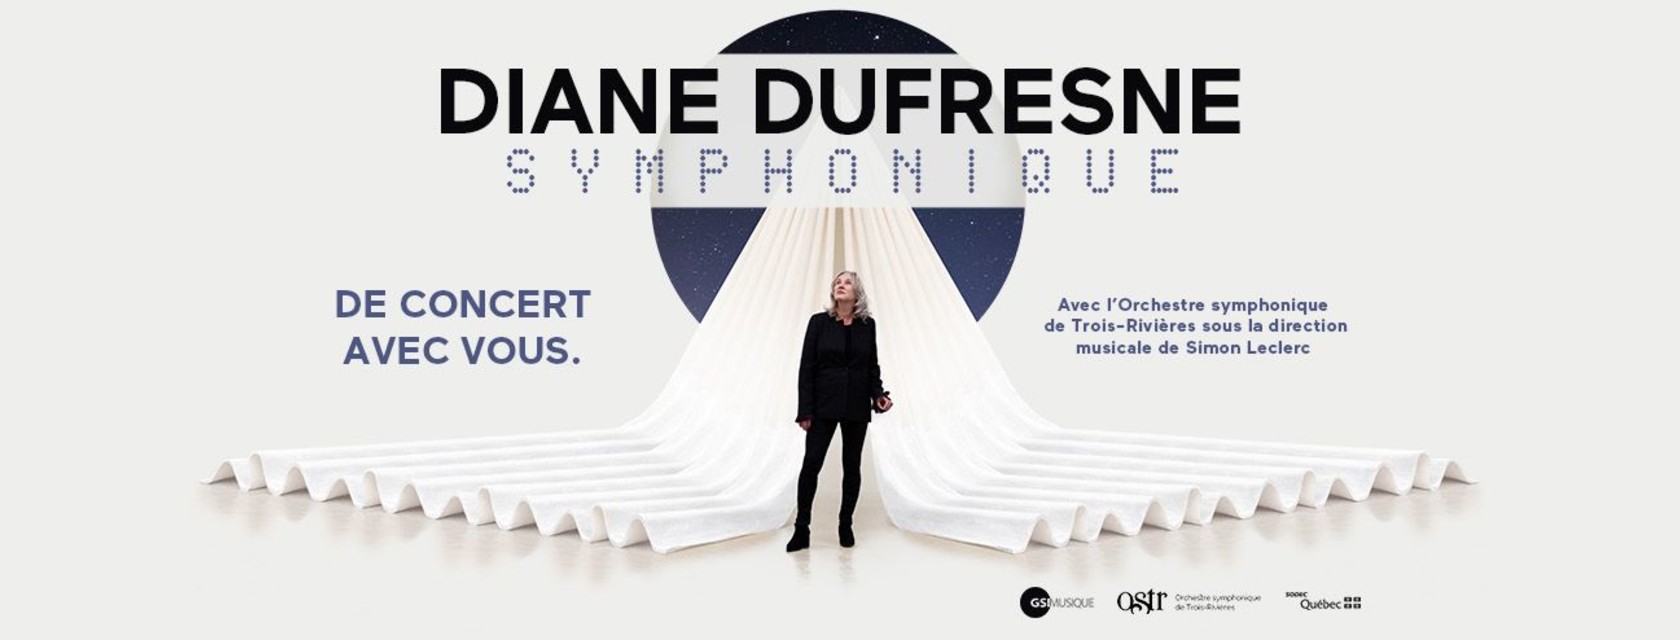 Diane Dufresne : De concert avec vous reporté en 2021